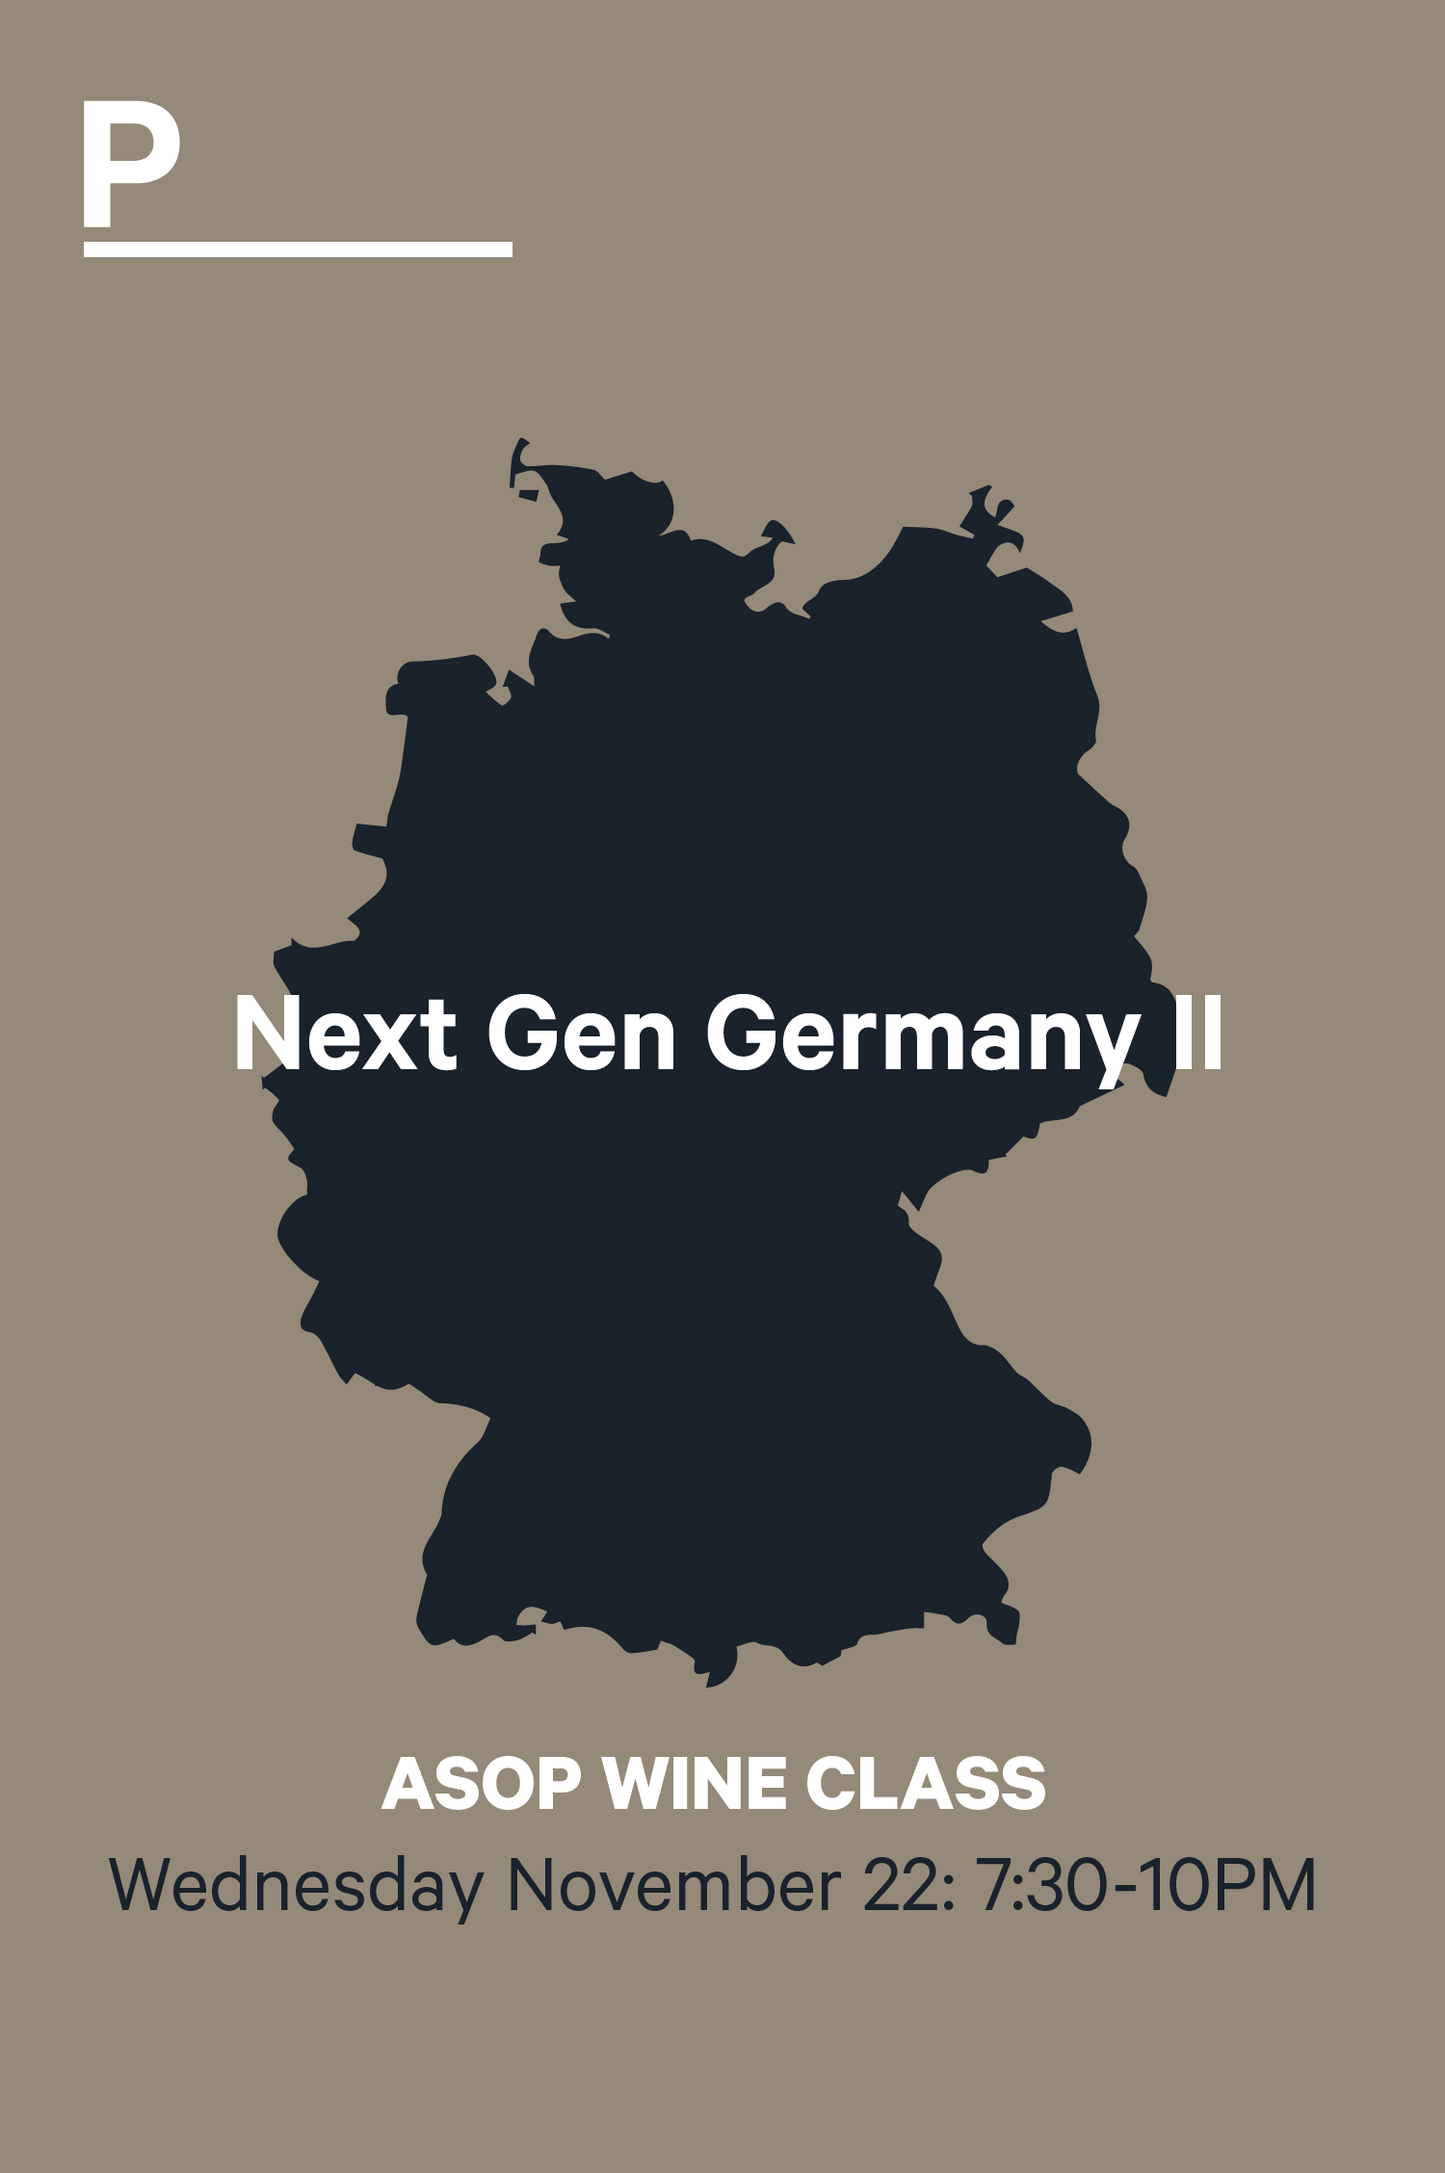 ASOP Wine Class: Next Gen Germany II